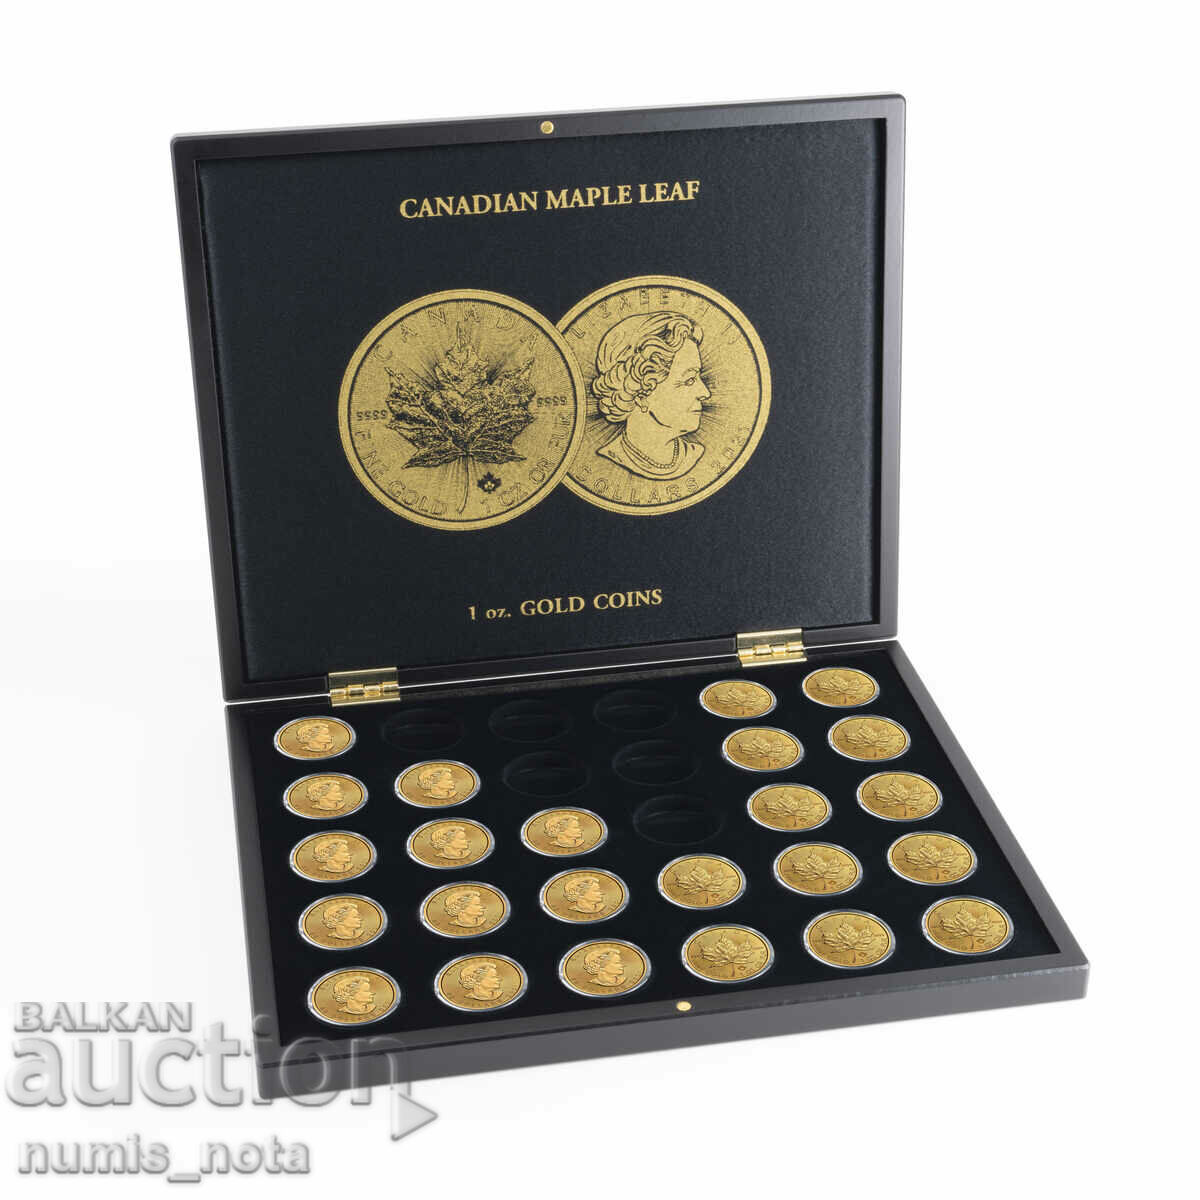 κουτί πολυτελείας για 30 χρυσά νομίσματα της 1 ουγκιάς. φύλλο σφενδάμου